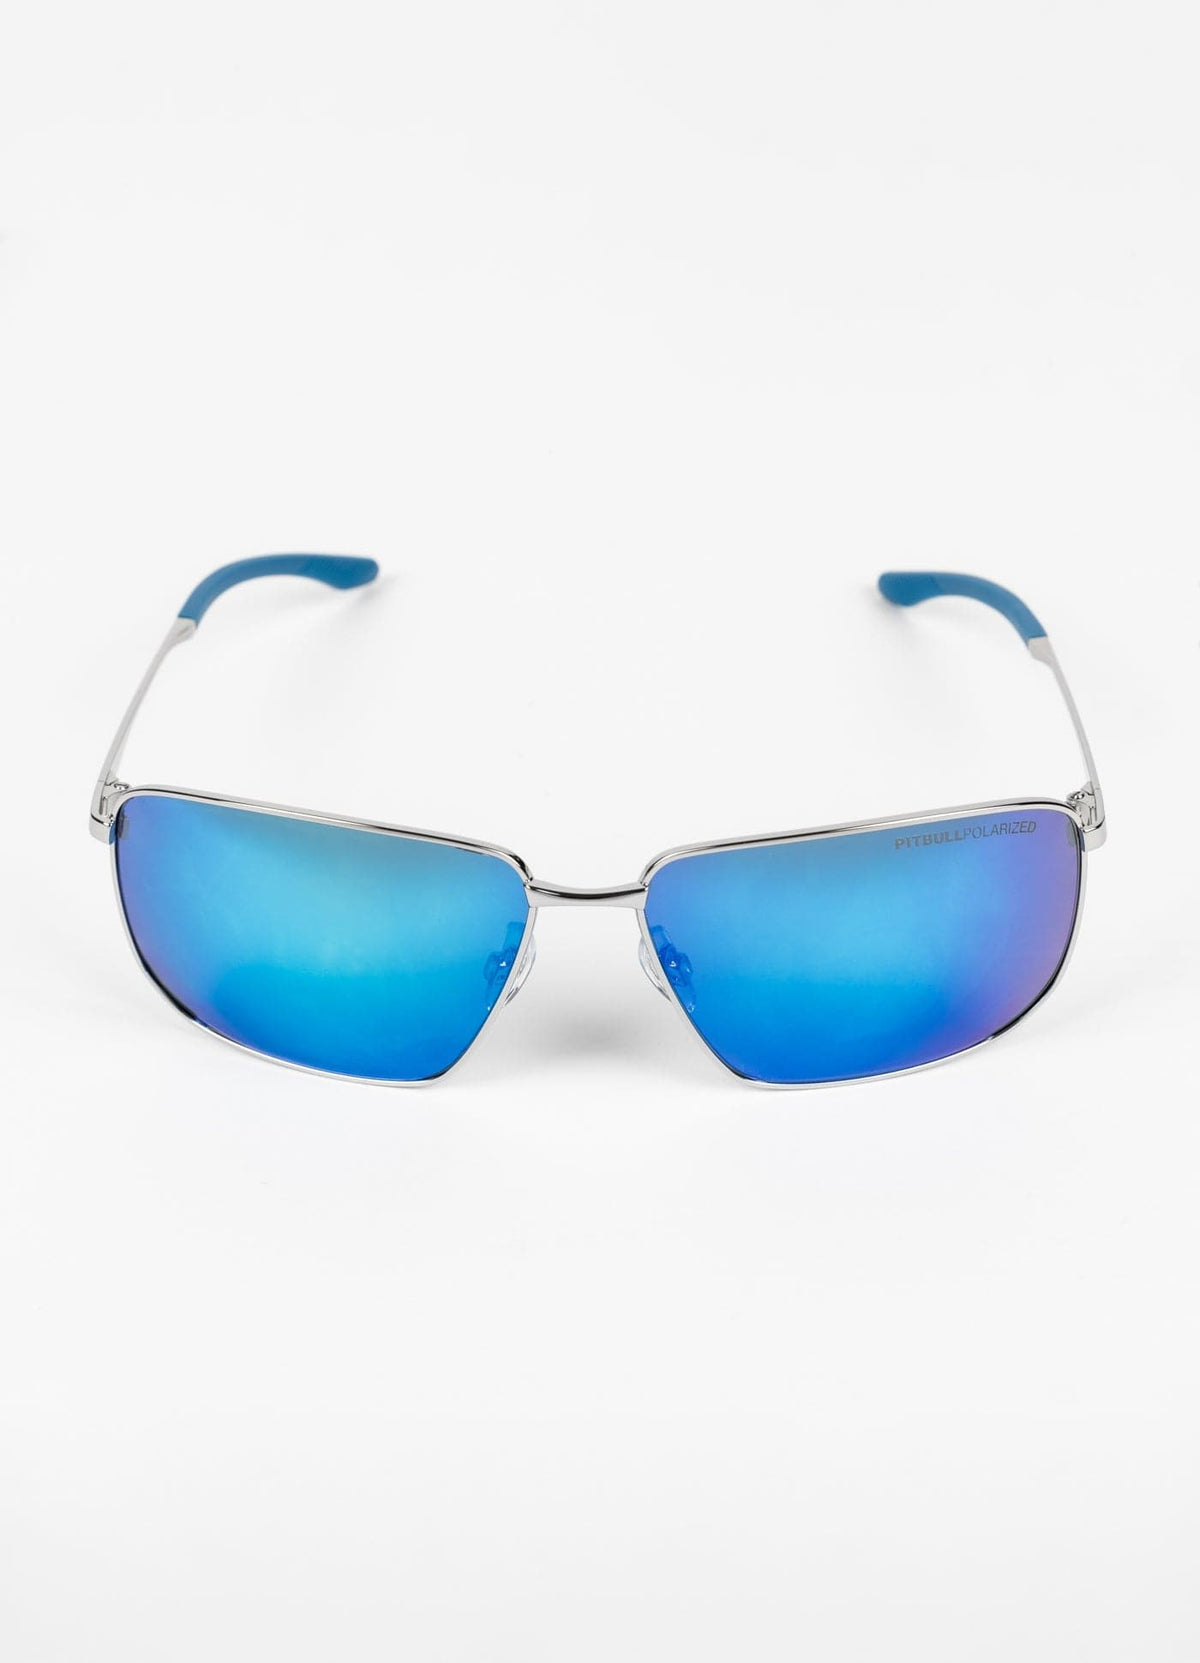 BENNET Blue Sunglasses - Pitbullstore.eu